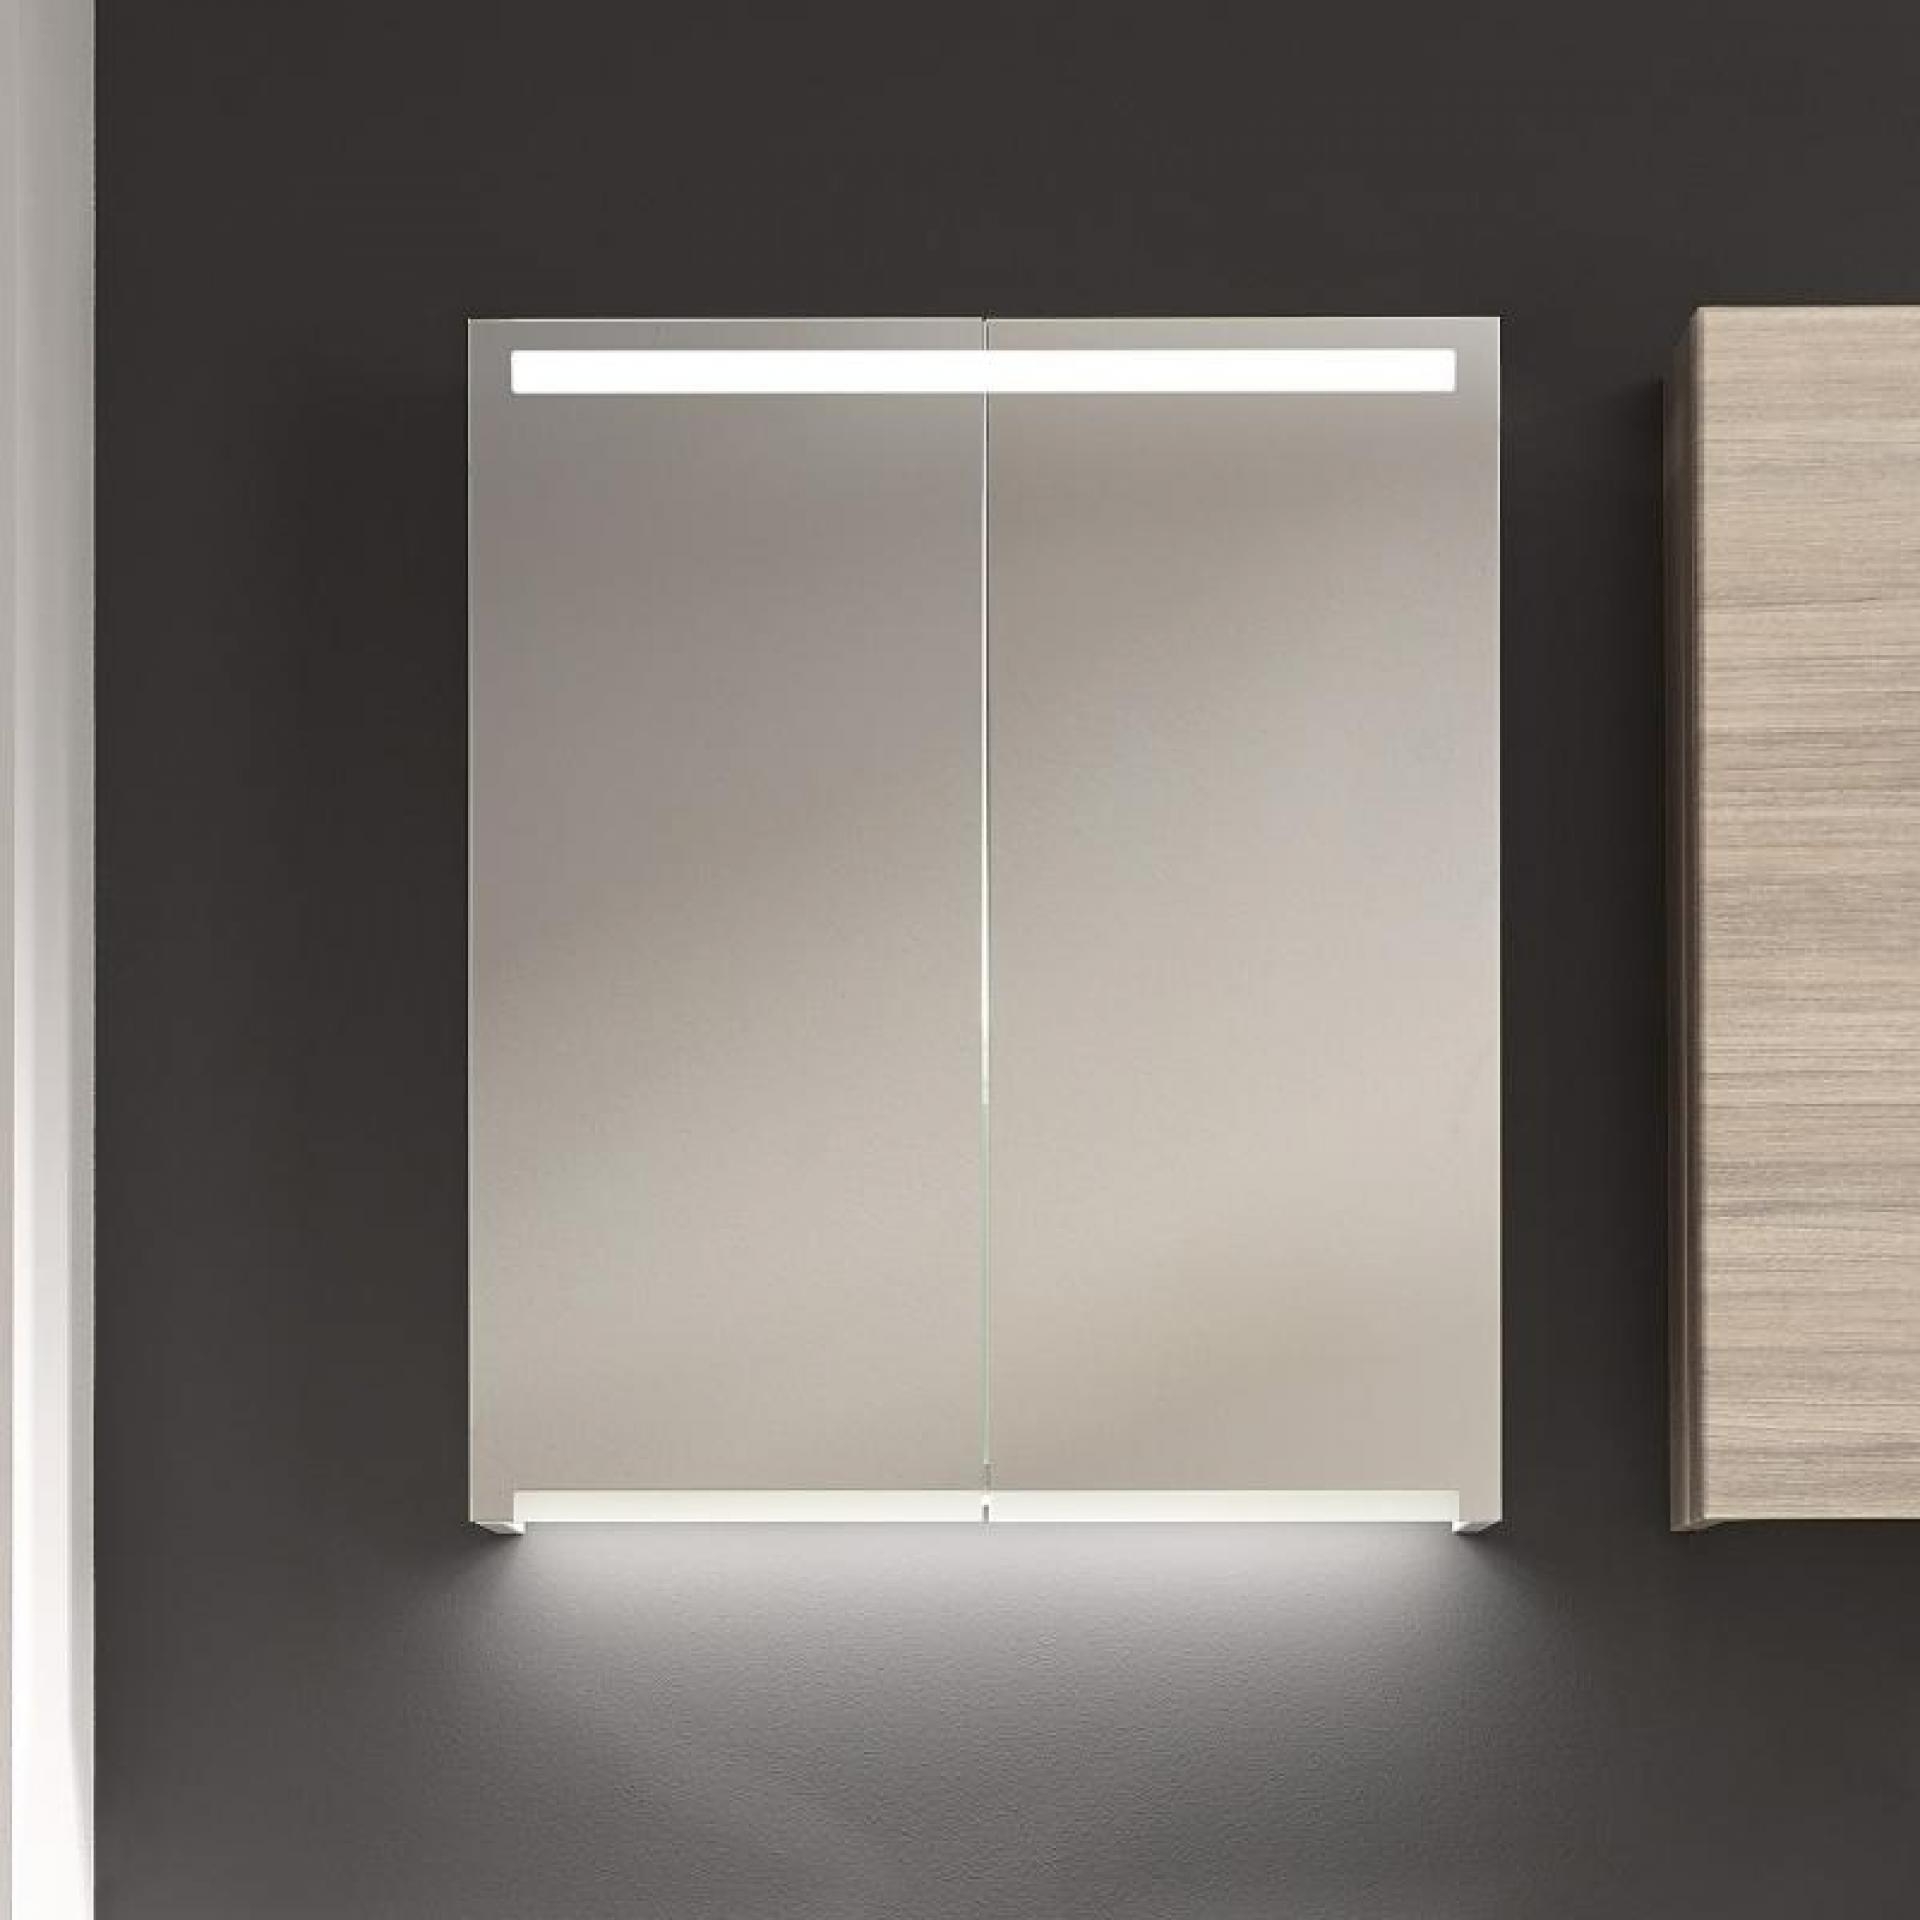 шкаф с зеркалом в ванную с подсветкой 60см